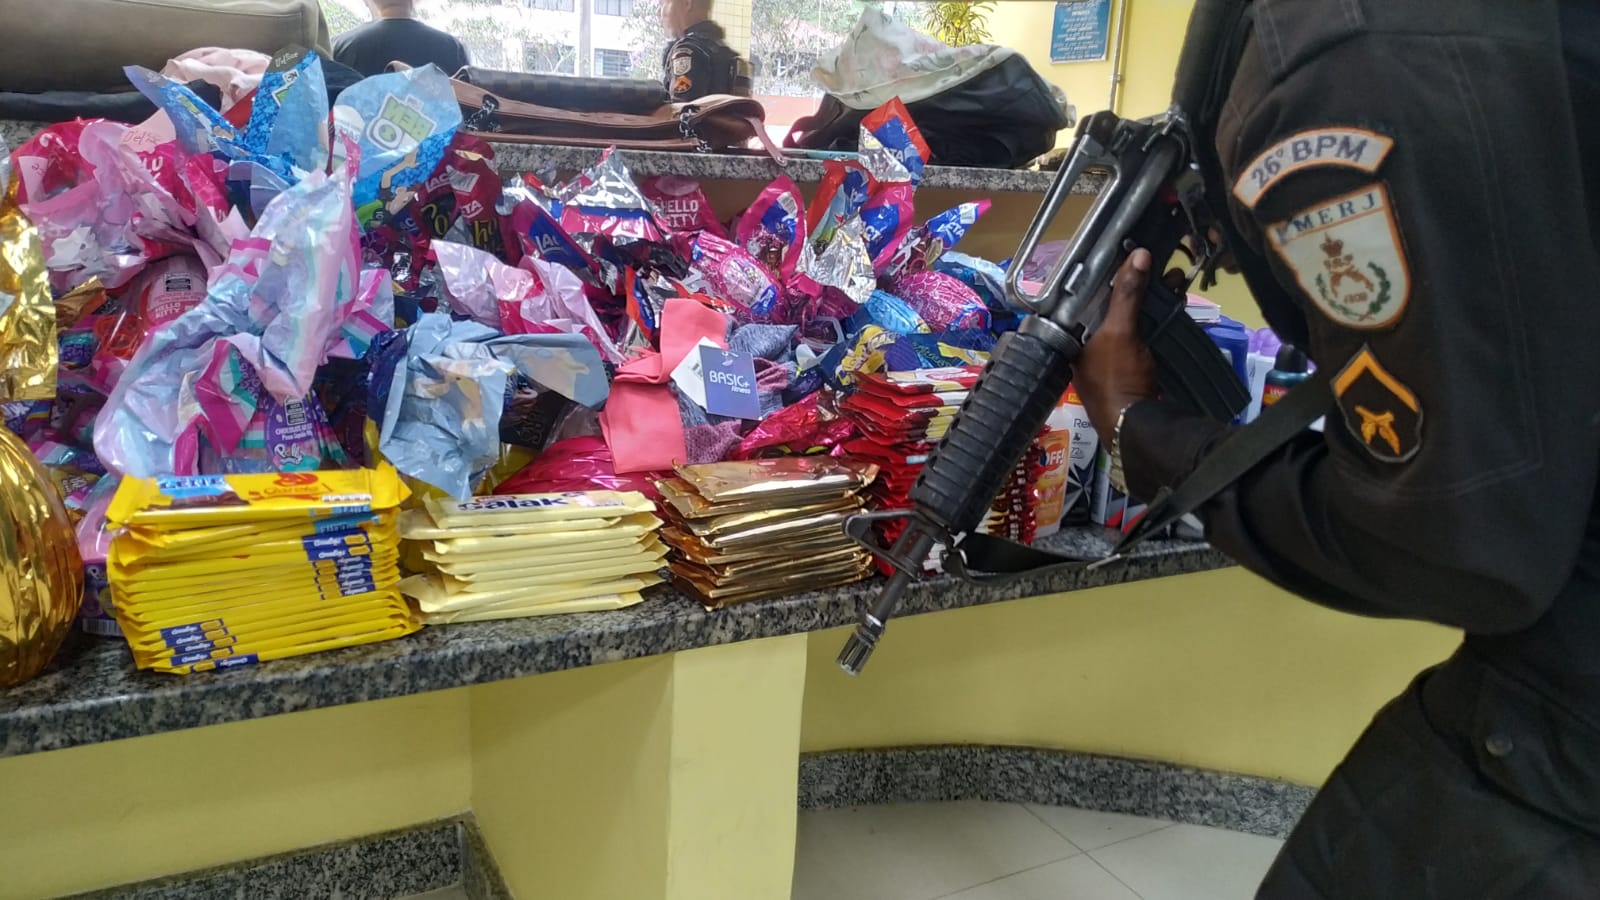 Jovem furta mais de 6 mil reais em barras e ovos de chocolate, em Petrópolis